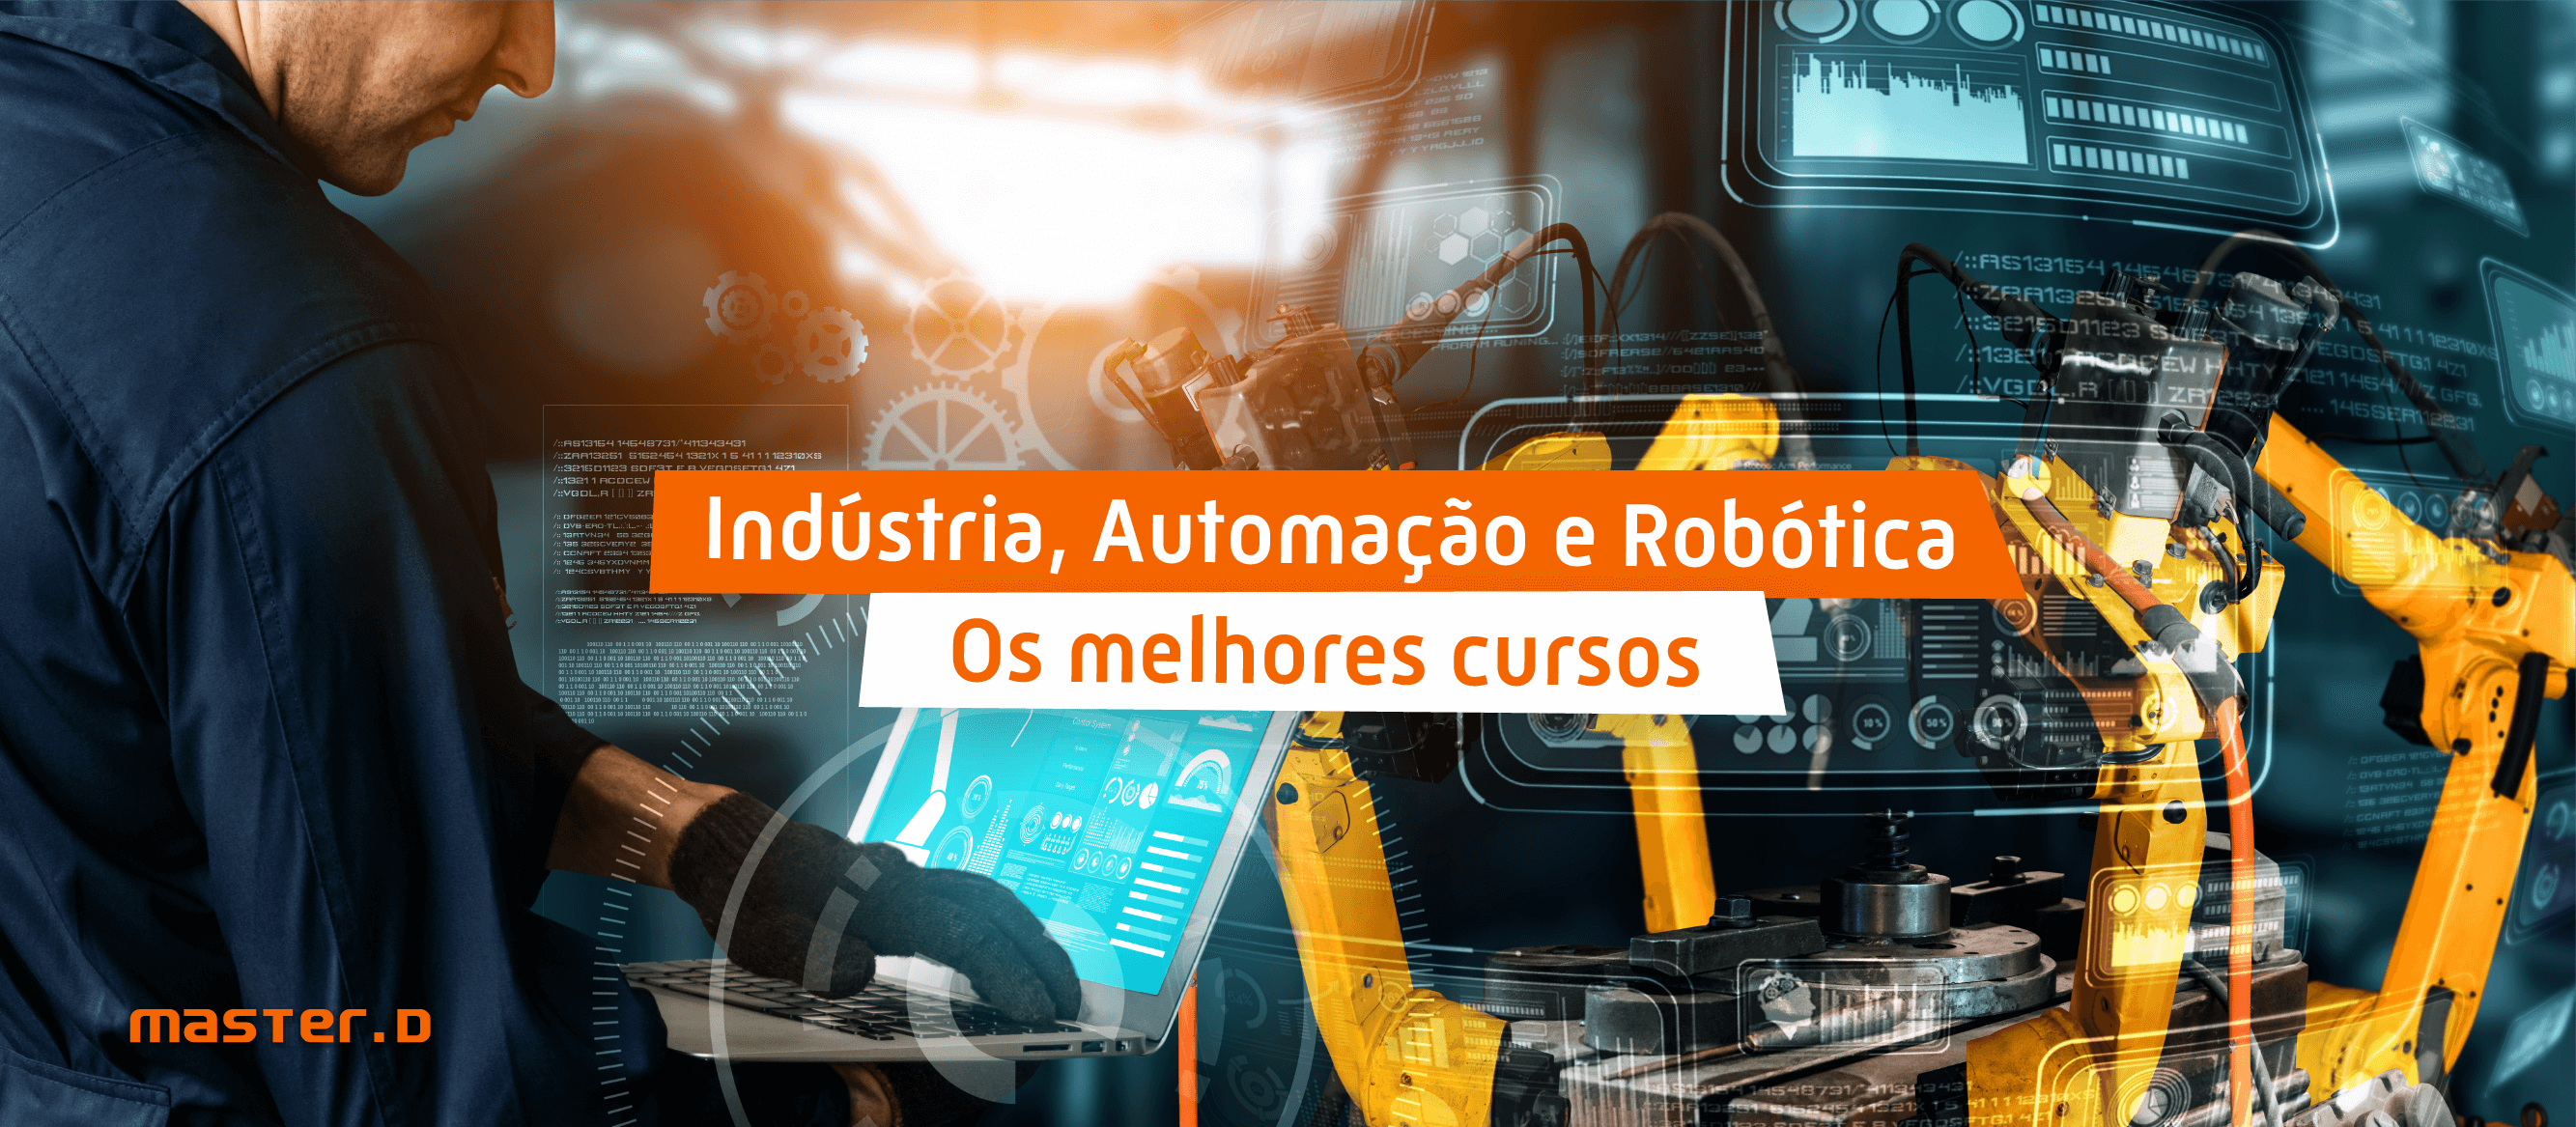 Cursos Industria, Robotica - Master D